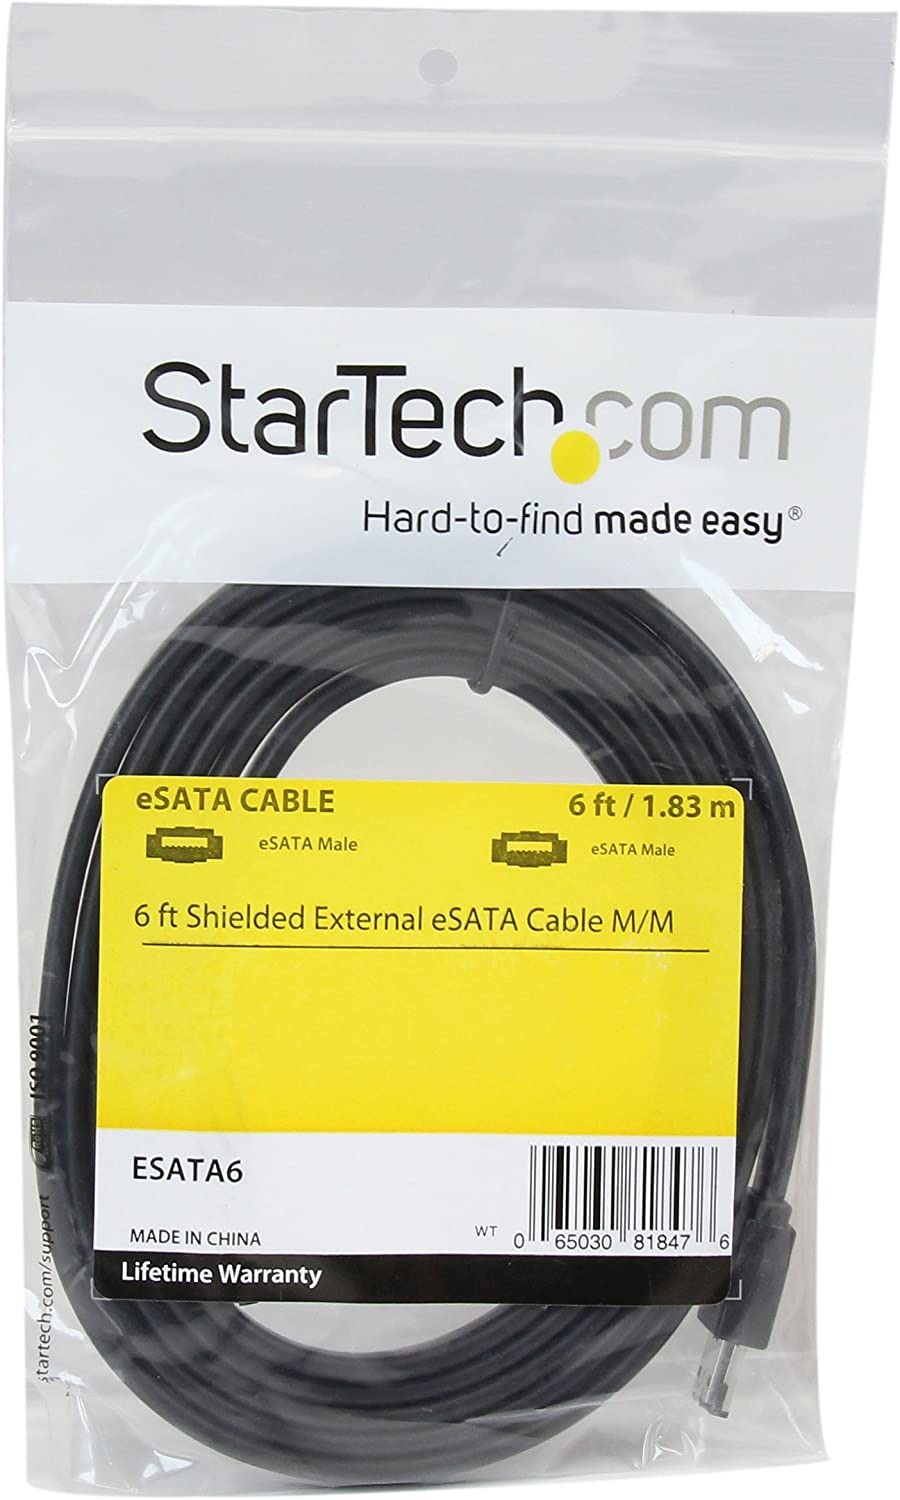 StarTech.com 6 ft Shielded External eSATA Cable M/M - 6ft External SATA Cable - 6ft eSATA Cable (ESATA6) 6 Feet